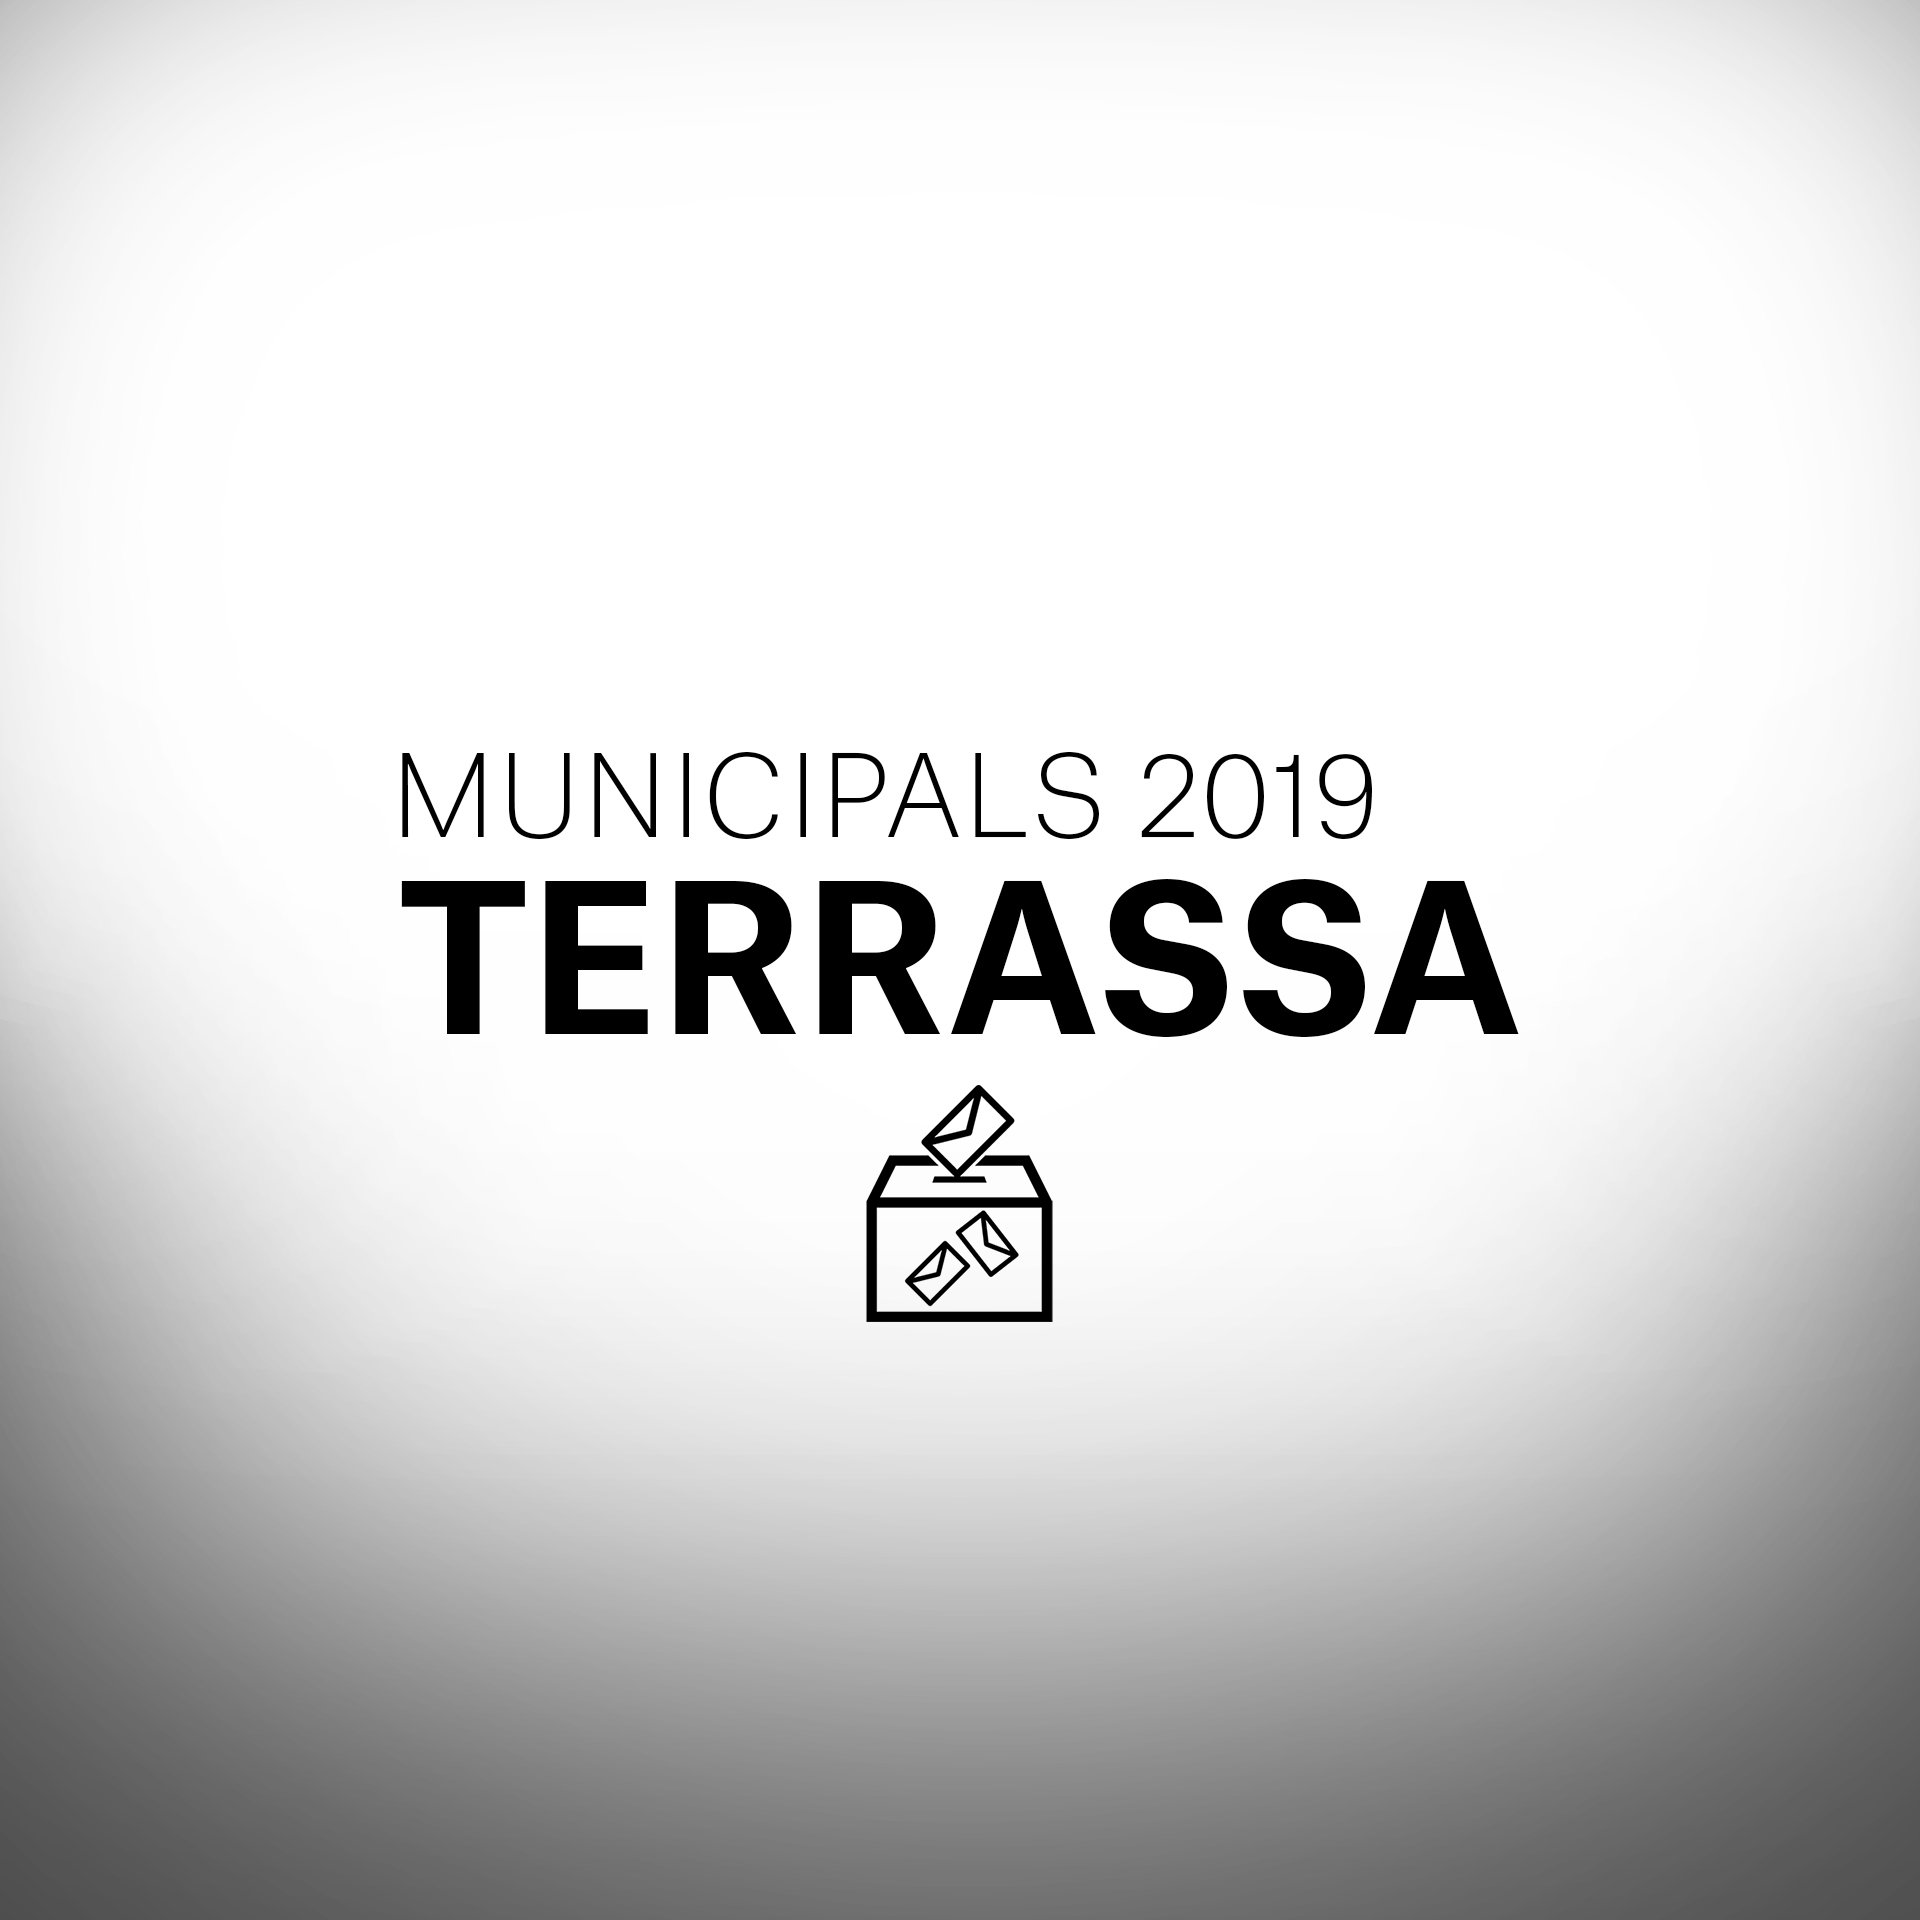 Què passarà a les eleccions municipals a Terrassa?